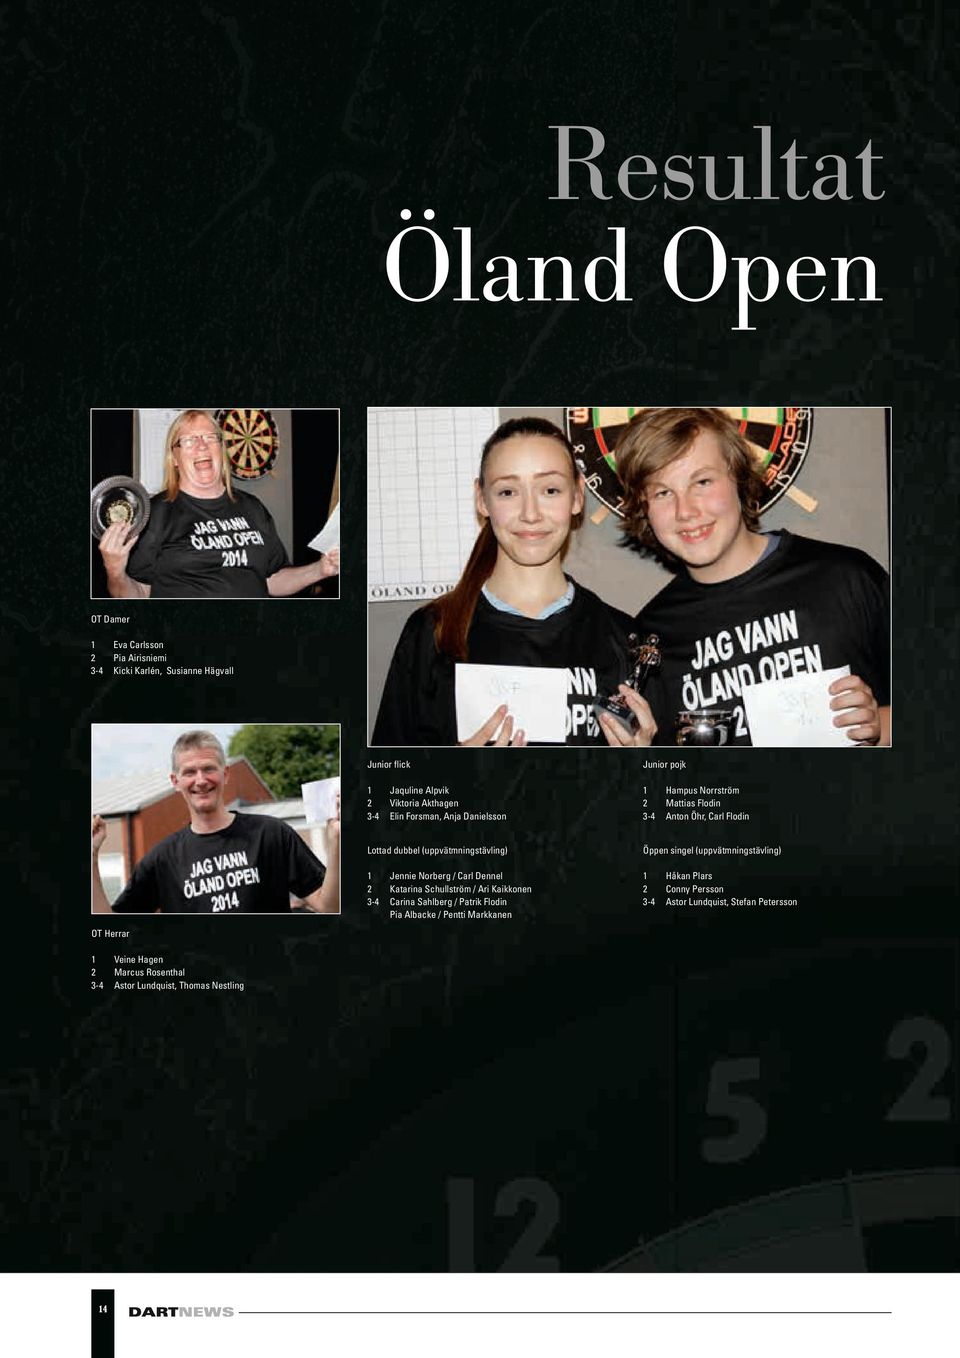 Mattias Flodin Anton Öhr, Carl Flodin Lottad dubbel (uppvätmningstävling) Öppen singel (uppvätmningstävling) 1 2 3-4 1 2 3-4 Jennie Norberg / Carl Dennel